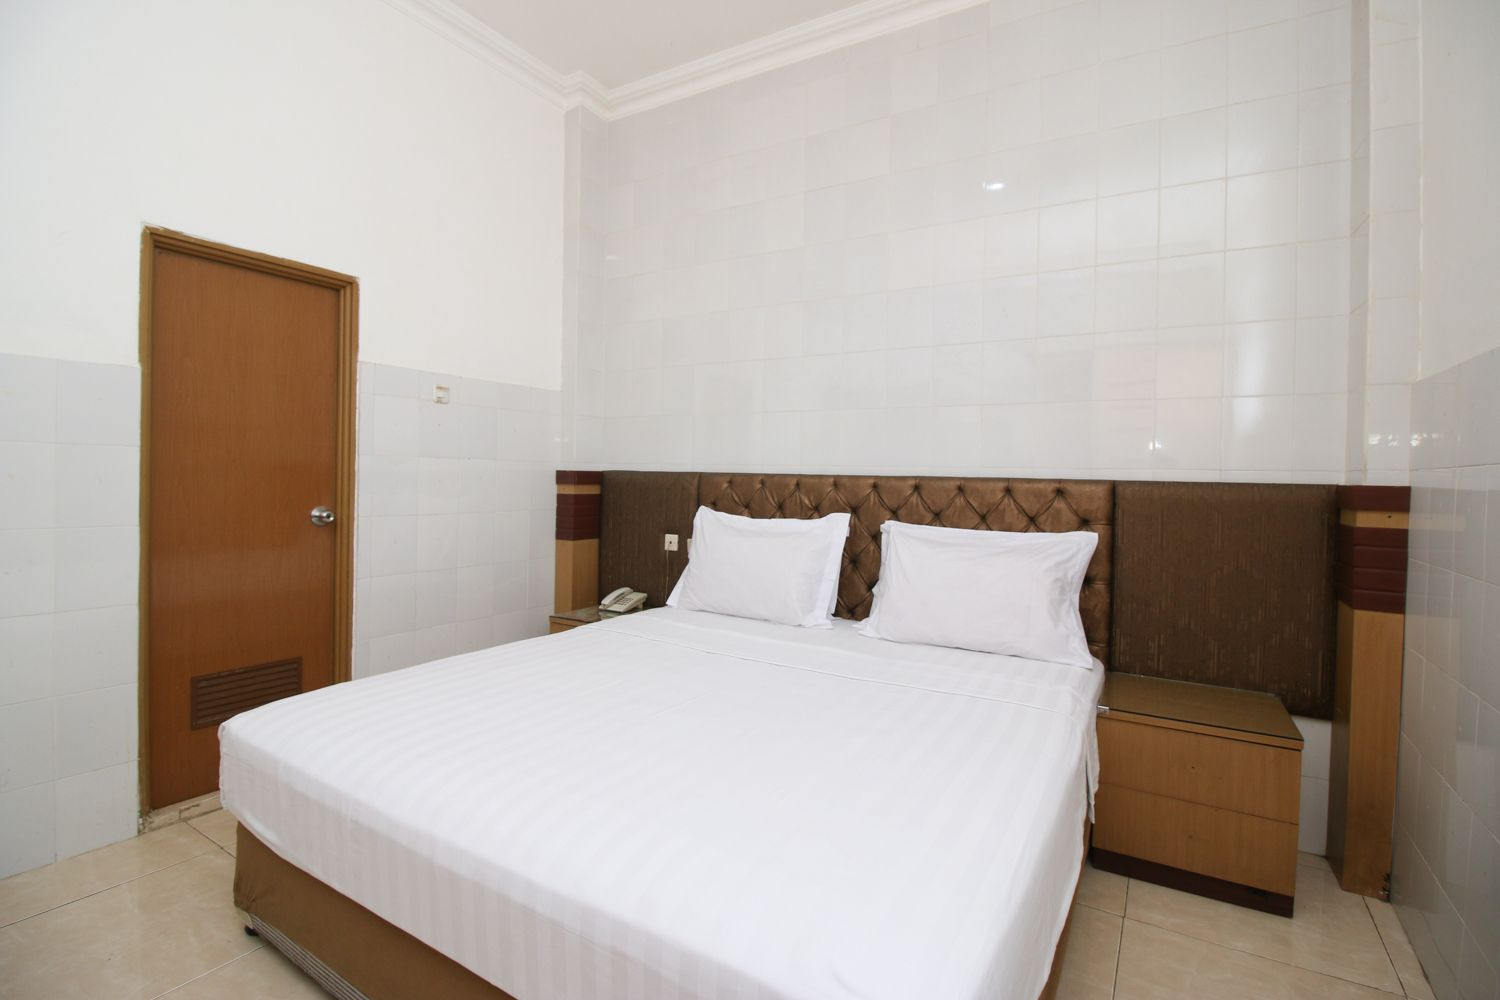 Bedroom 1, Hotel Metro Surabaya, Surabaya